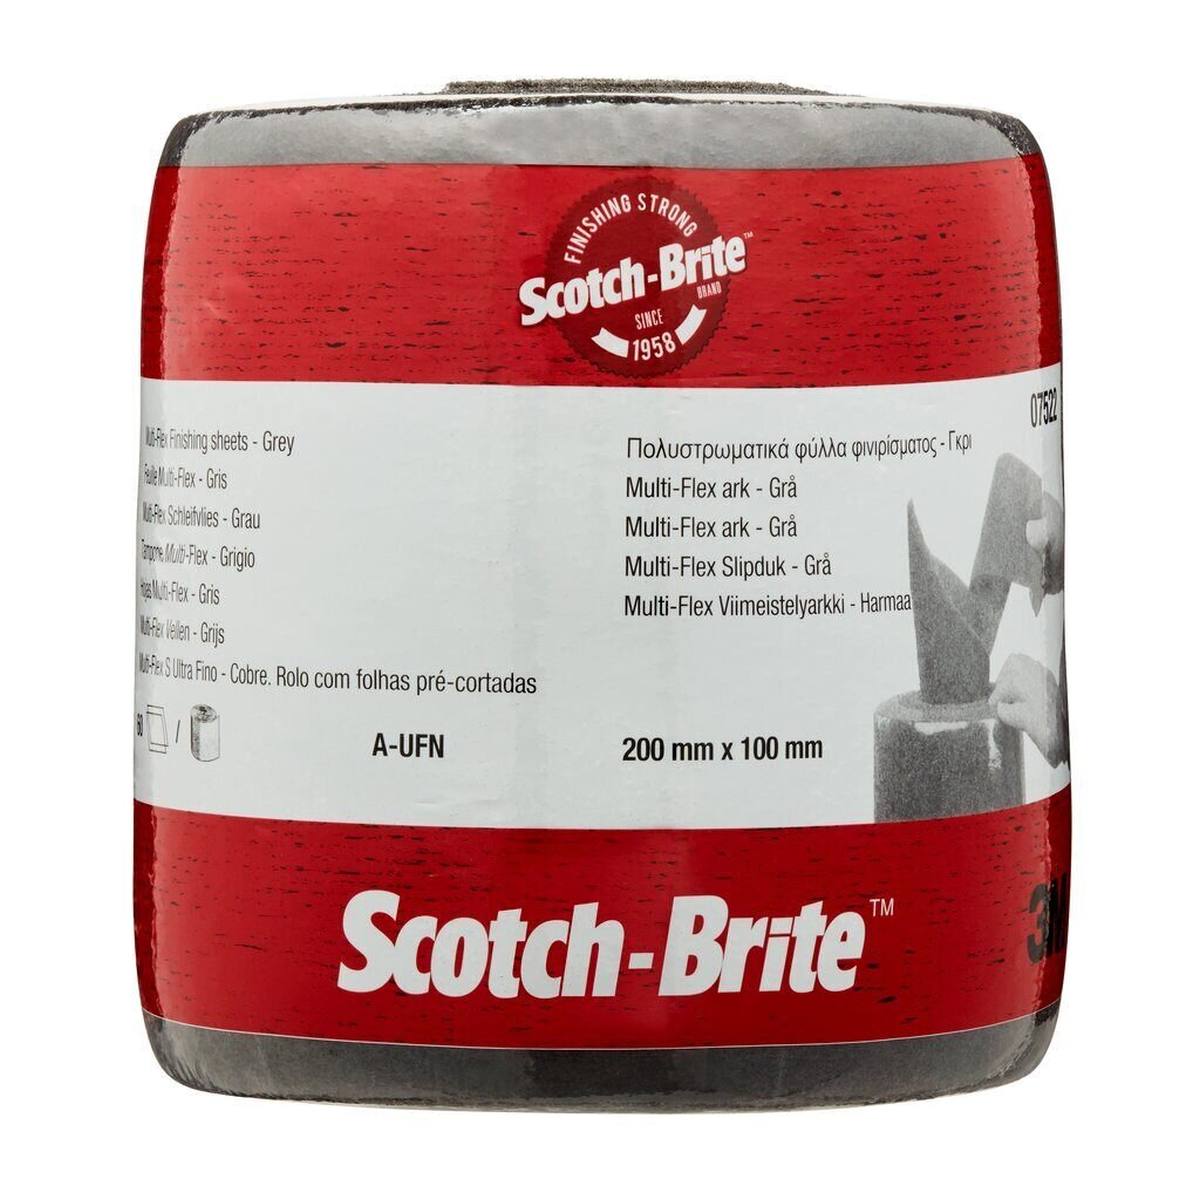 3M Scotch-Brite Multi-Flex Vliesrolle MX-SR, grau, 100 mm x 200 mm, A, ultra fine, 60-fach perforiert #07522